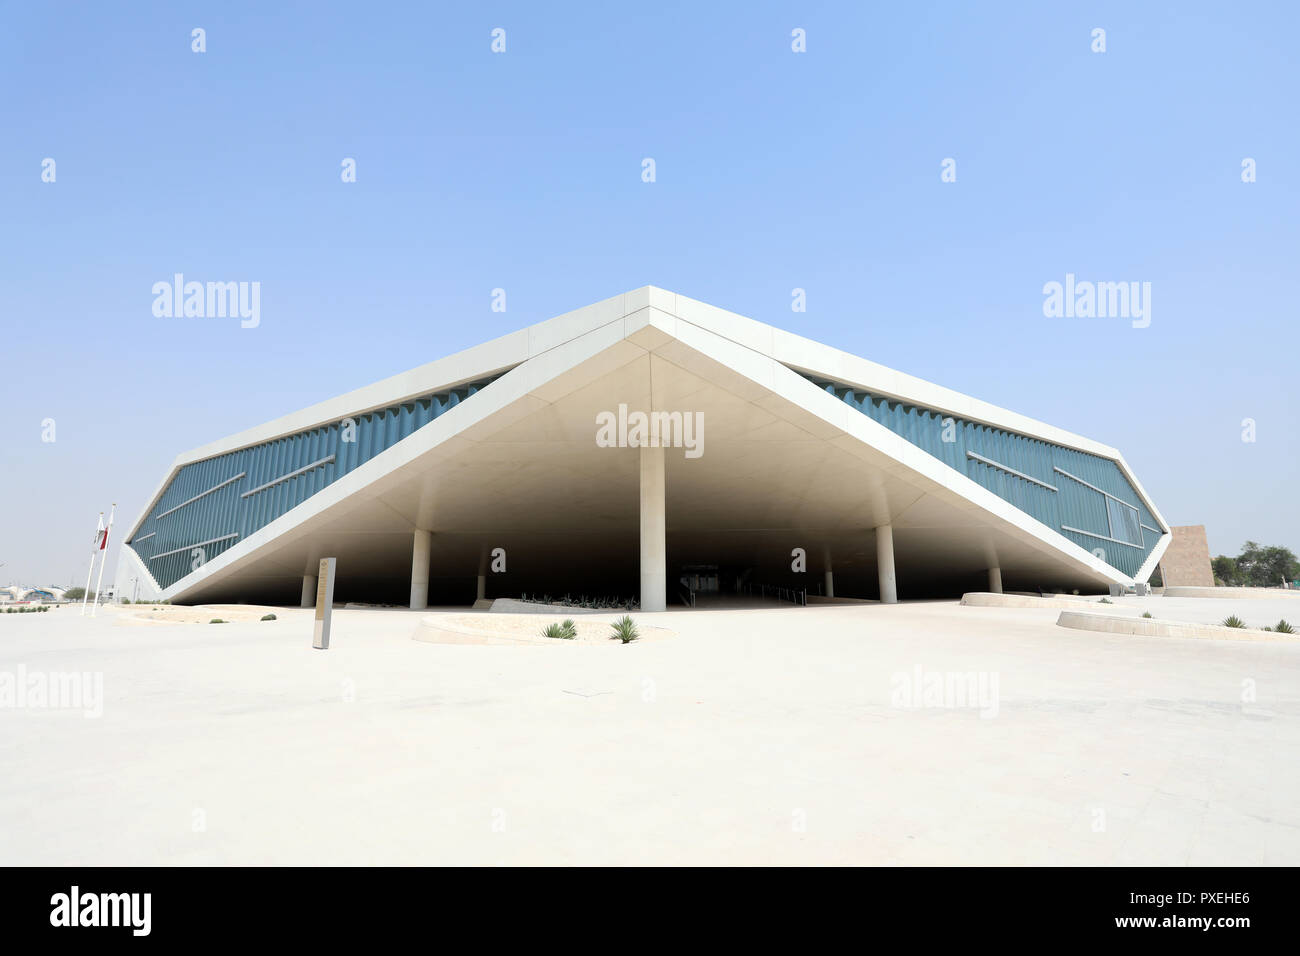 / Qatar Doha - Octobre 9, 2018 : La Bibliothèque nationale du Qatar, conçu par l'architecte néerlandais Rem Koolhaas, dans la capitale du Qatar Doha Banque D'Images